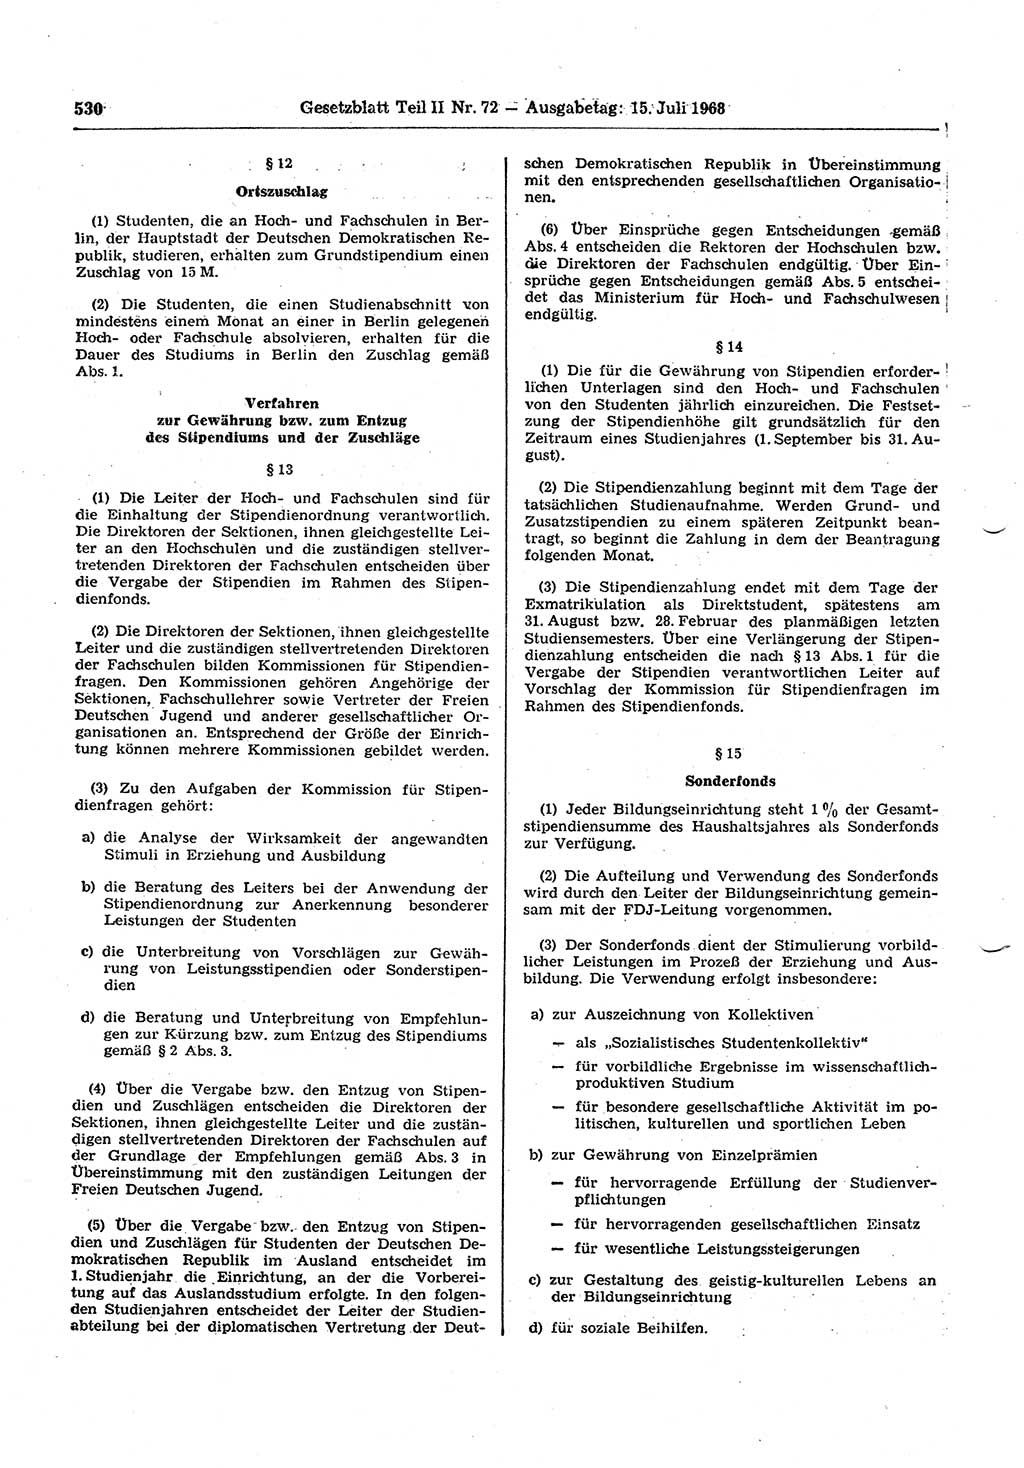 Gesetzblatt (GBl.) der Deutschen Demokratischen Republik (DDR) Teil ⅠⅠ 1968, Seite 530 (GBl. DDR ⅠⅠ 1968, S. 530)